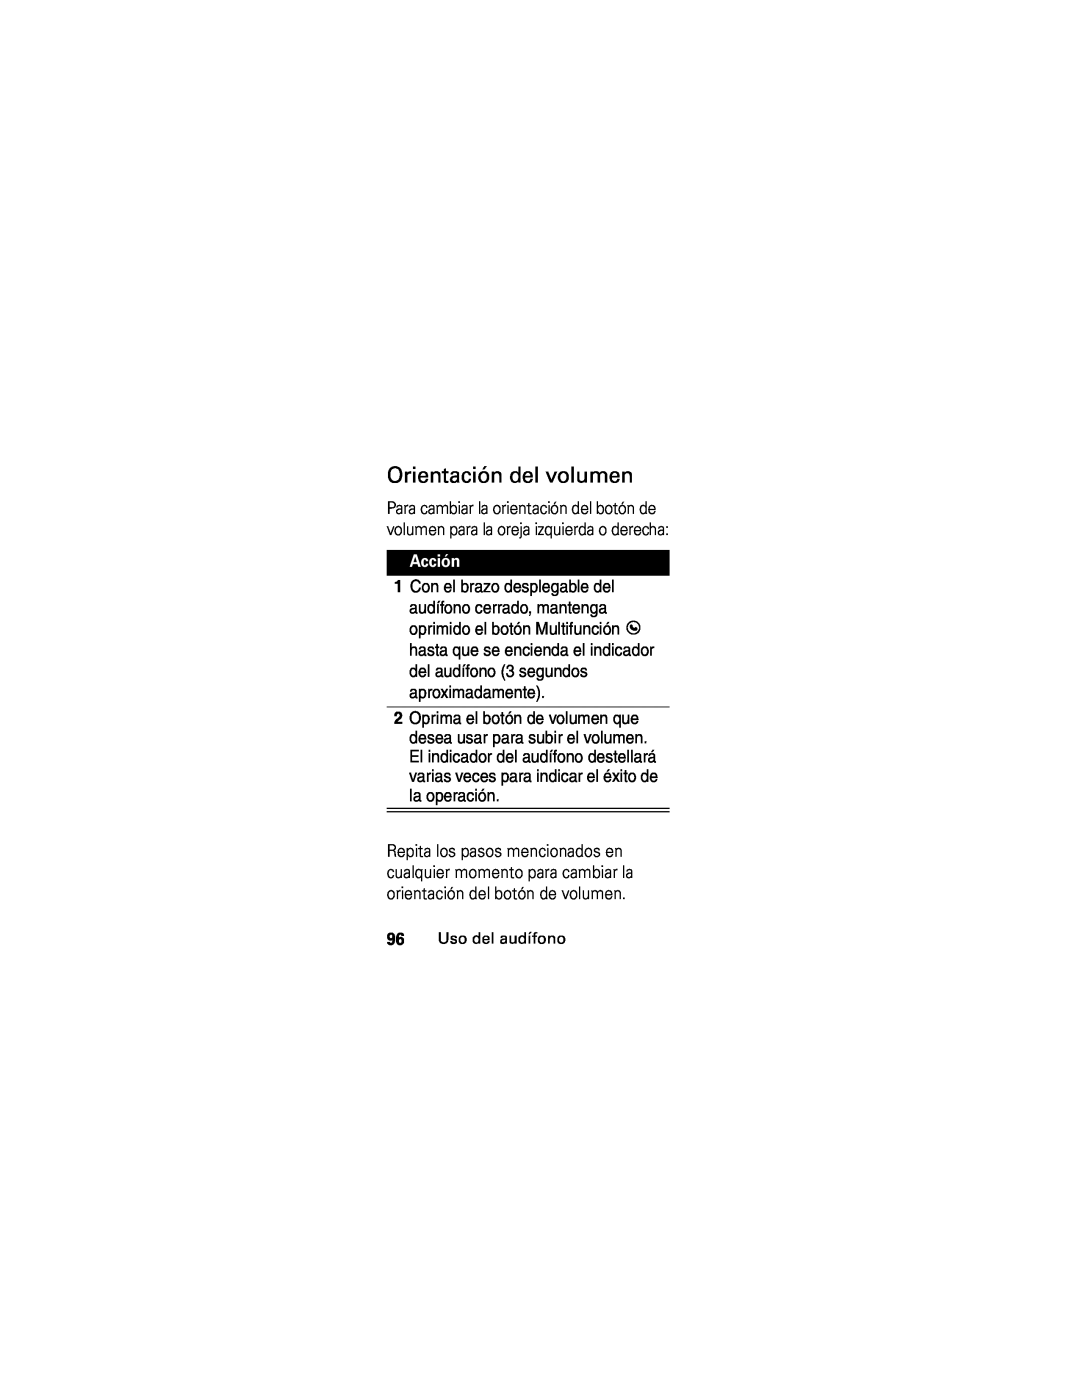 Motorola HS850 manual Orientación del volumen, Acción, 96Uso del audífono 